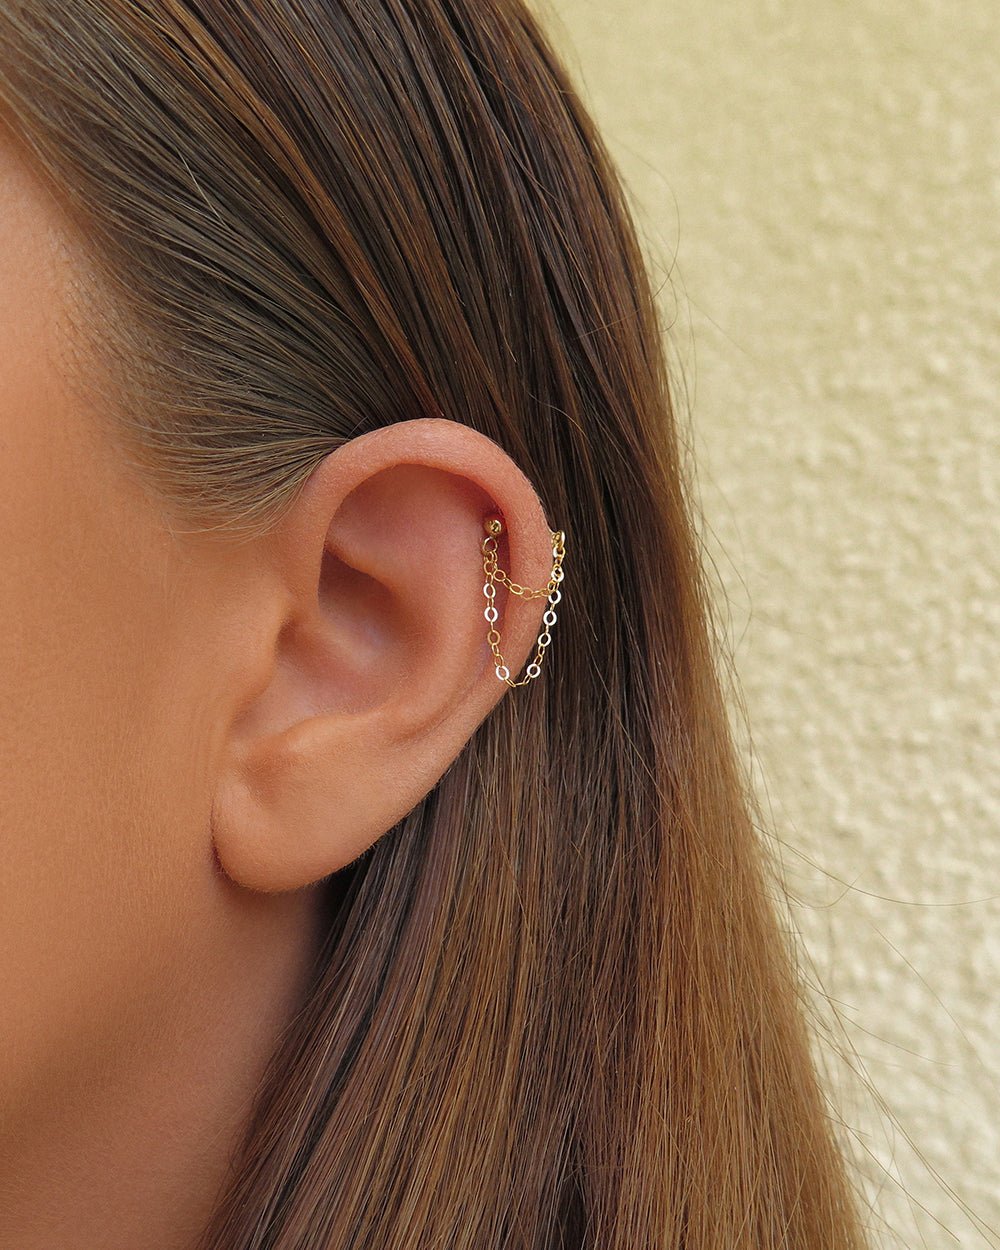 DOUBLE CHAIN STUD EARRINGS- 14k Gold - The Littl - 14k Yellow Gold Fill - 1x SINGLE Double Chain Stud Earring Earrings